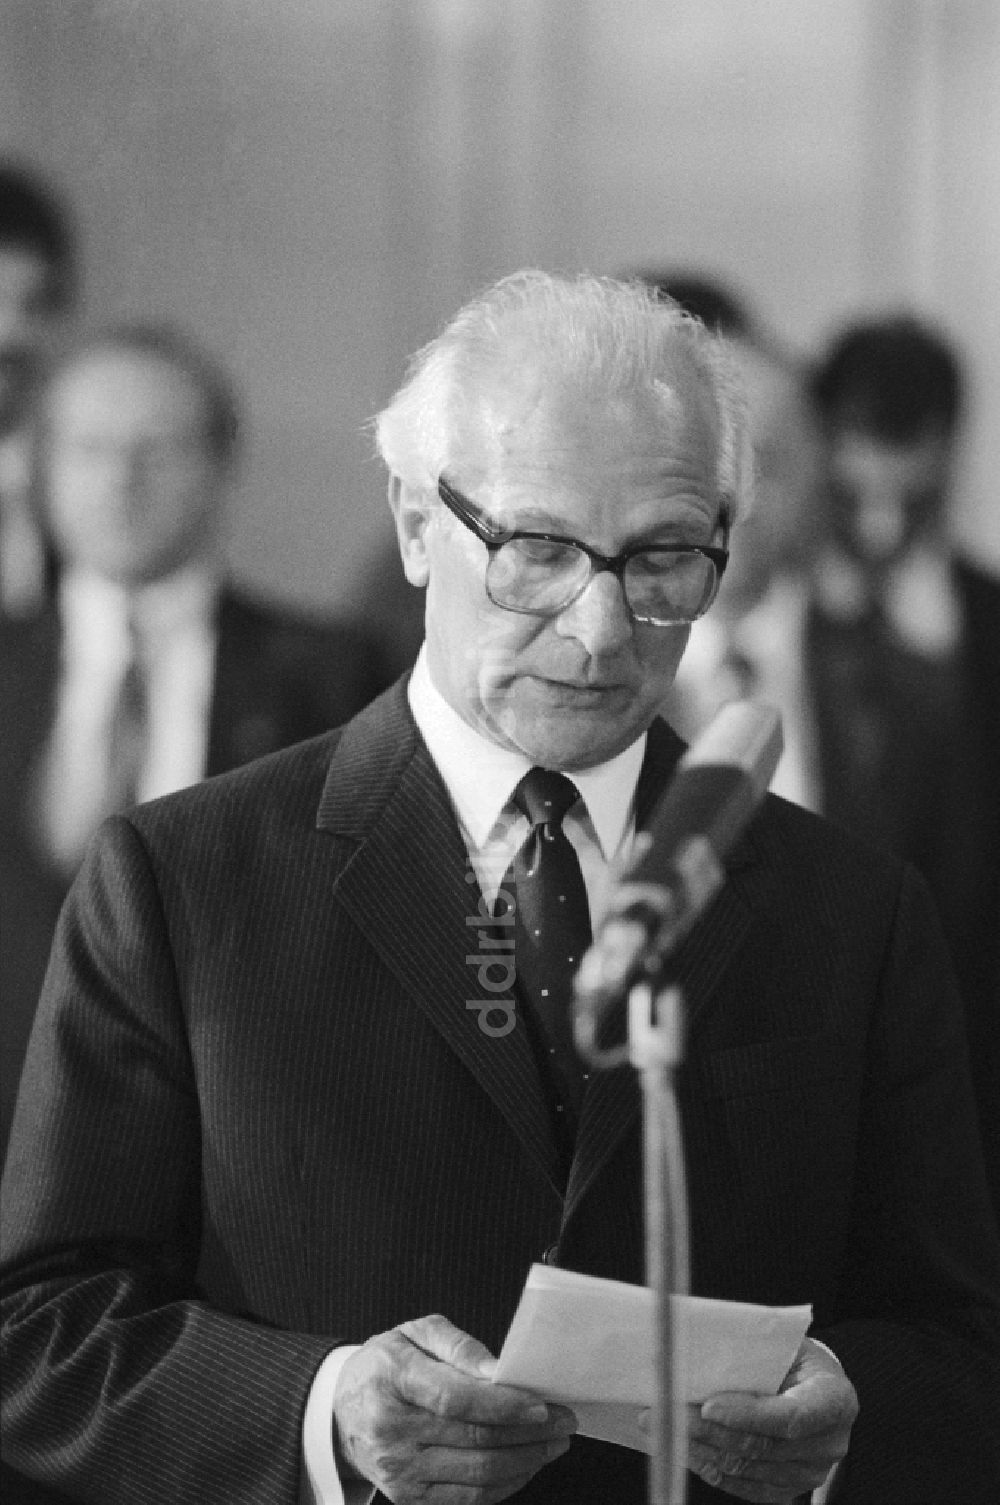 DDR-Bildarchiv: Prag - Erich Honecker (1912 - 1994) bei einem Staatsbesuch in Prag in der CSSR / Tschechische Republik